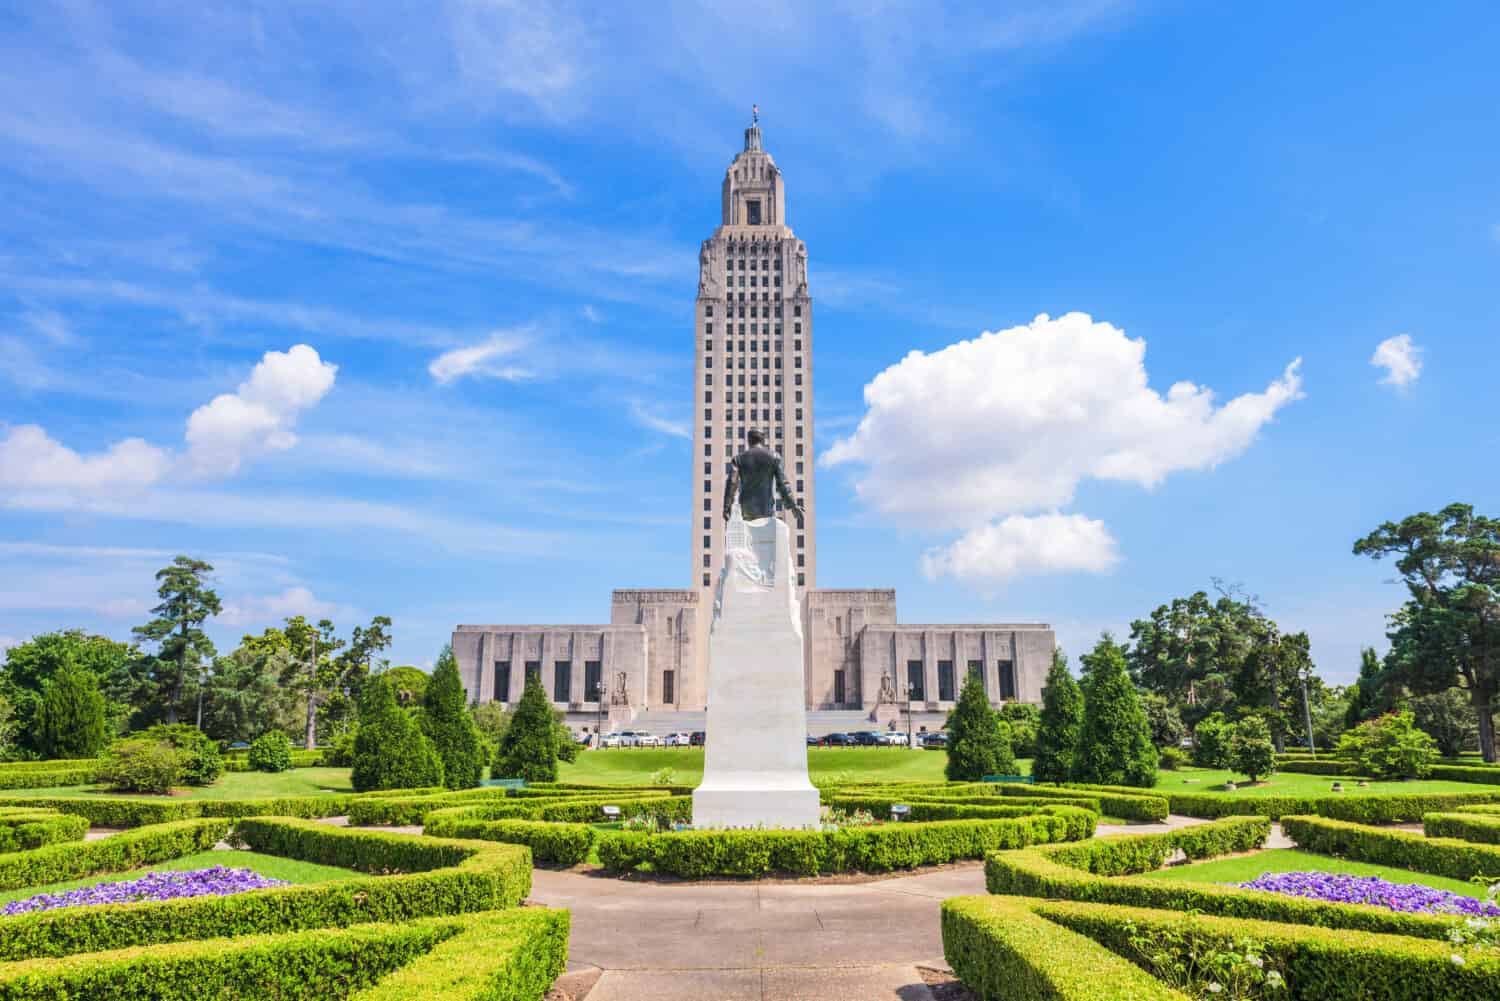 Louisiana State Capitol in Baton Rouge, Louisiana, USA.